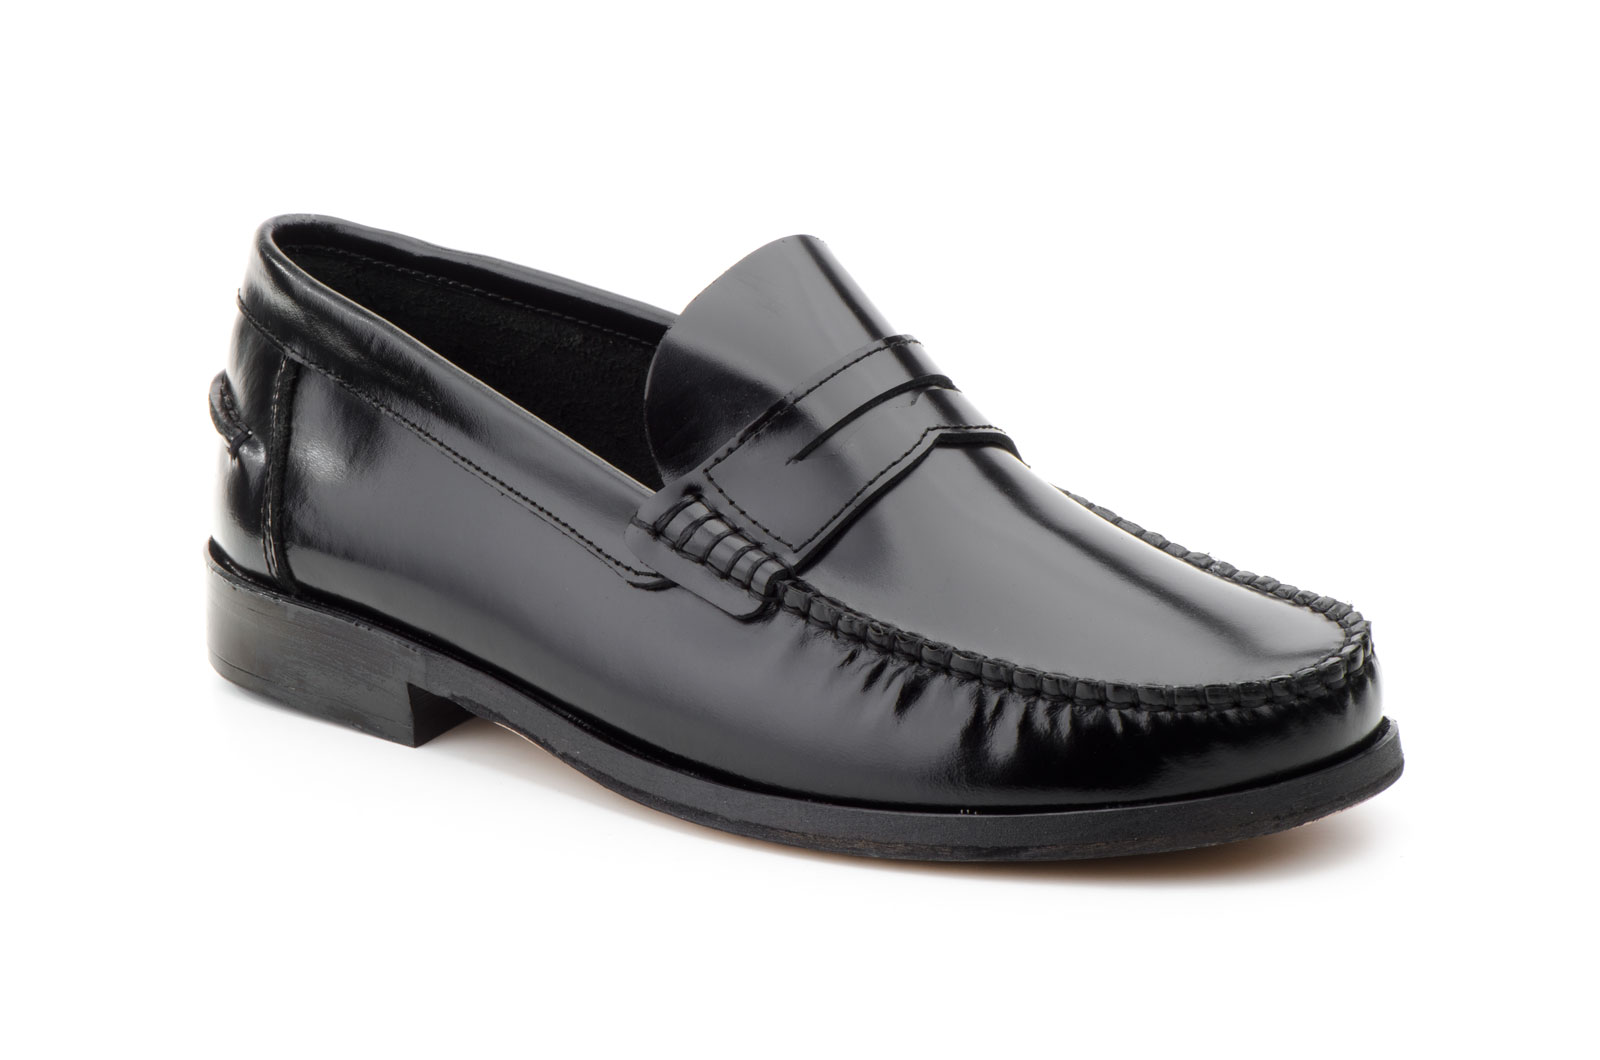 Zapatos Hombre Piel Negro Suela de Cuero Castellanos  -  Ref. 1003 Negro